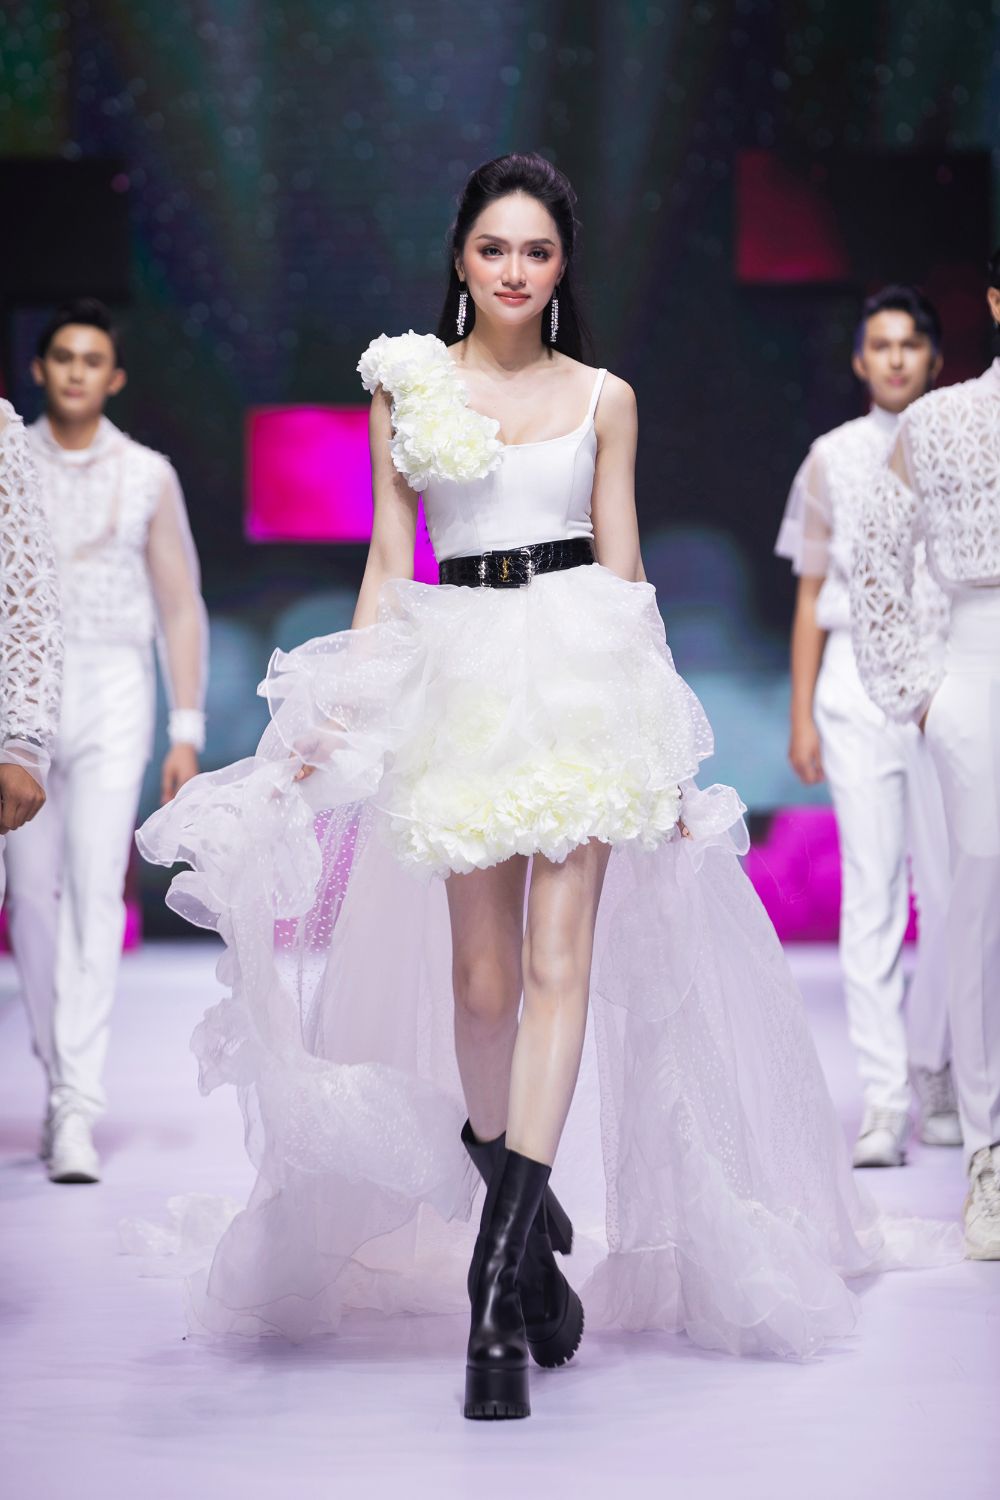 Hương Giang là vedette cho nhà thiết kế Trương Thanh Long Cưng xỉu với màn diễn thời trang của con gái Khánh Đơn   Huỳnh Như